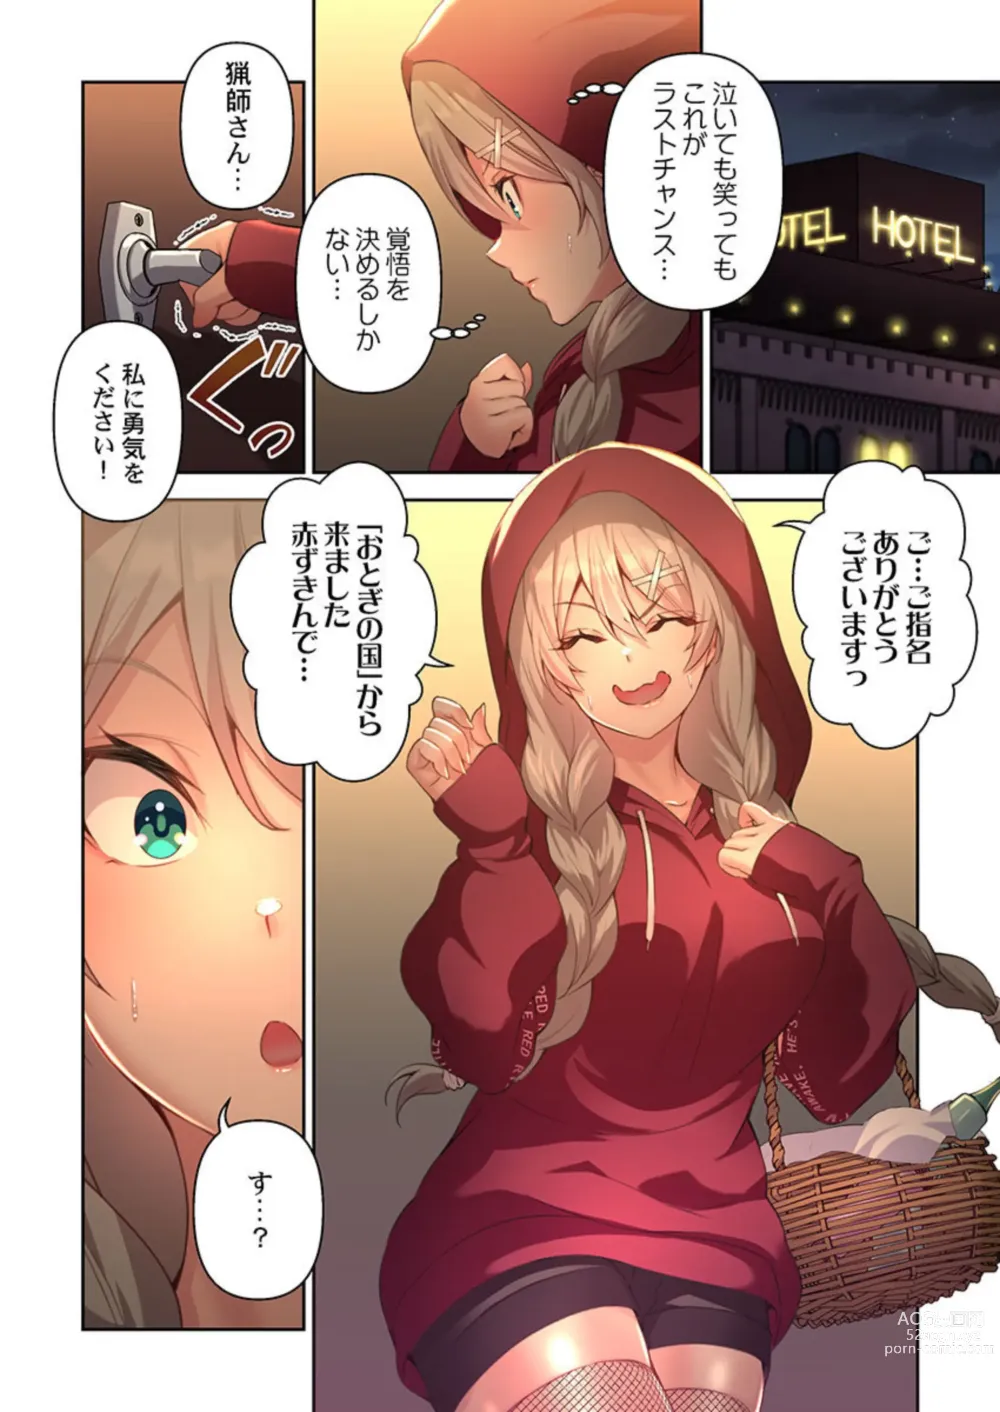 Page 10 of manga DeliHeal Otogi no Kuni 1